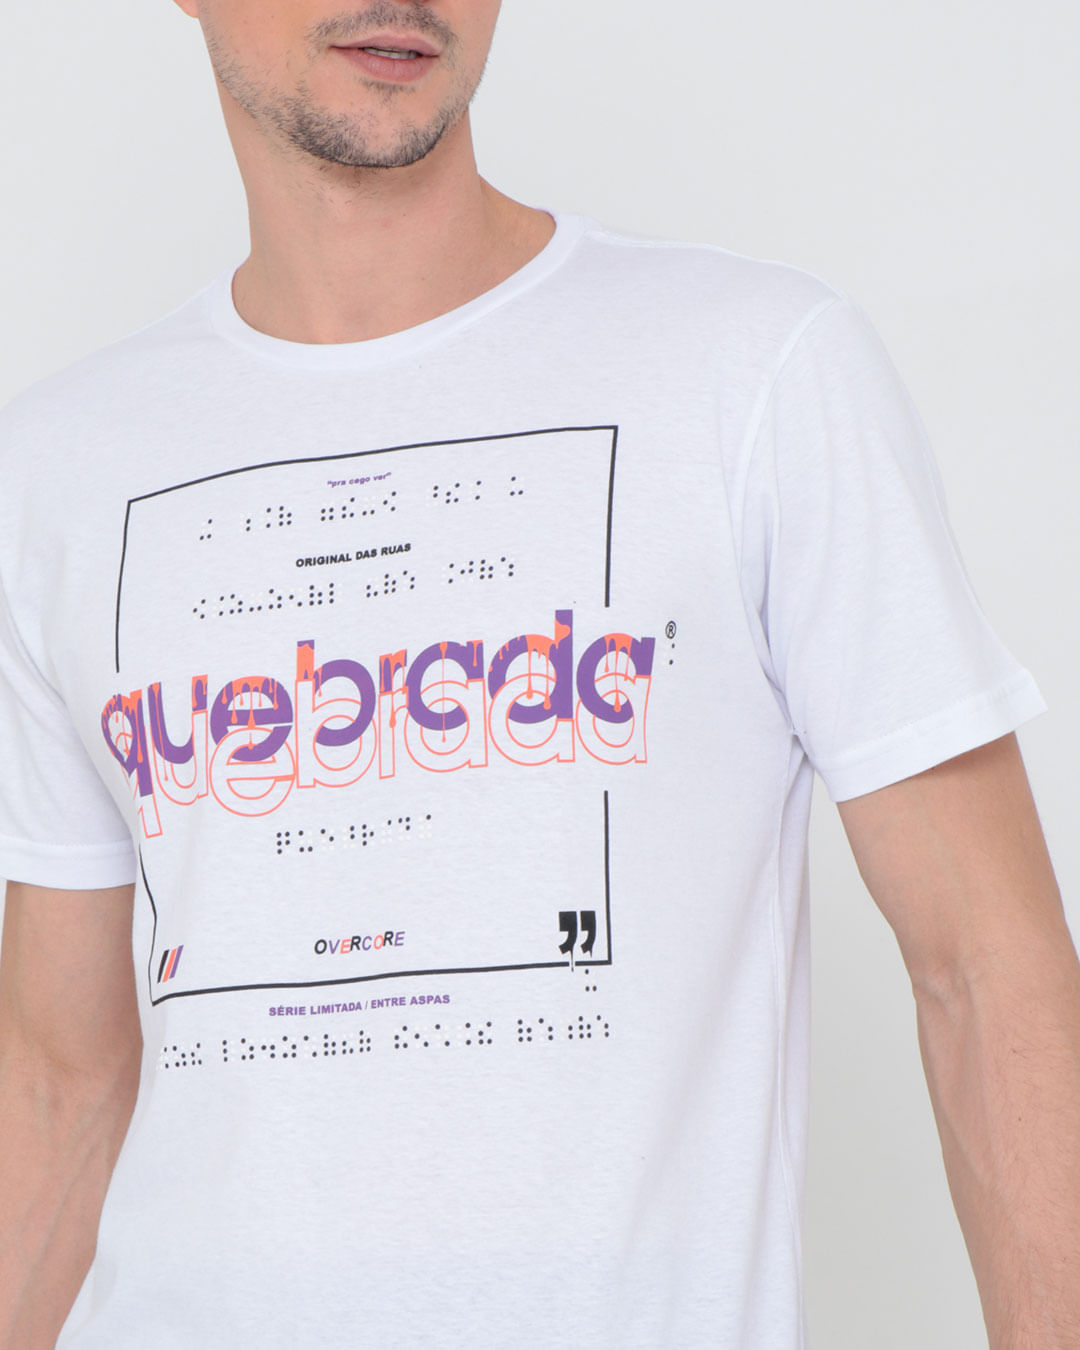 Camiseta-Overcore-Serie-Estre-Aspas-Preta